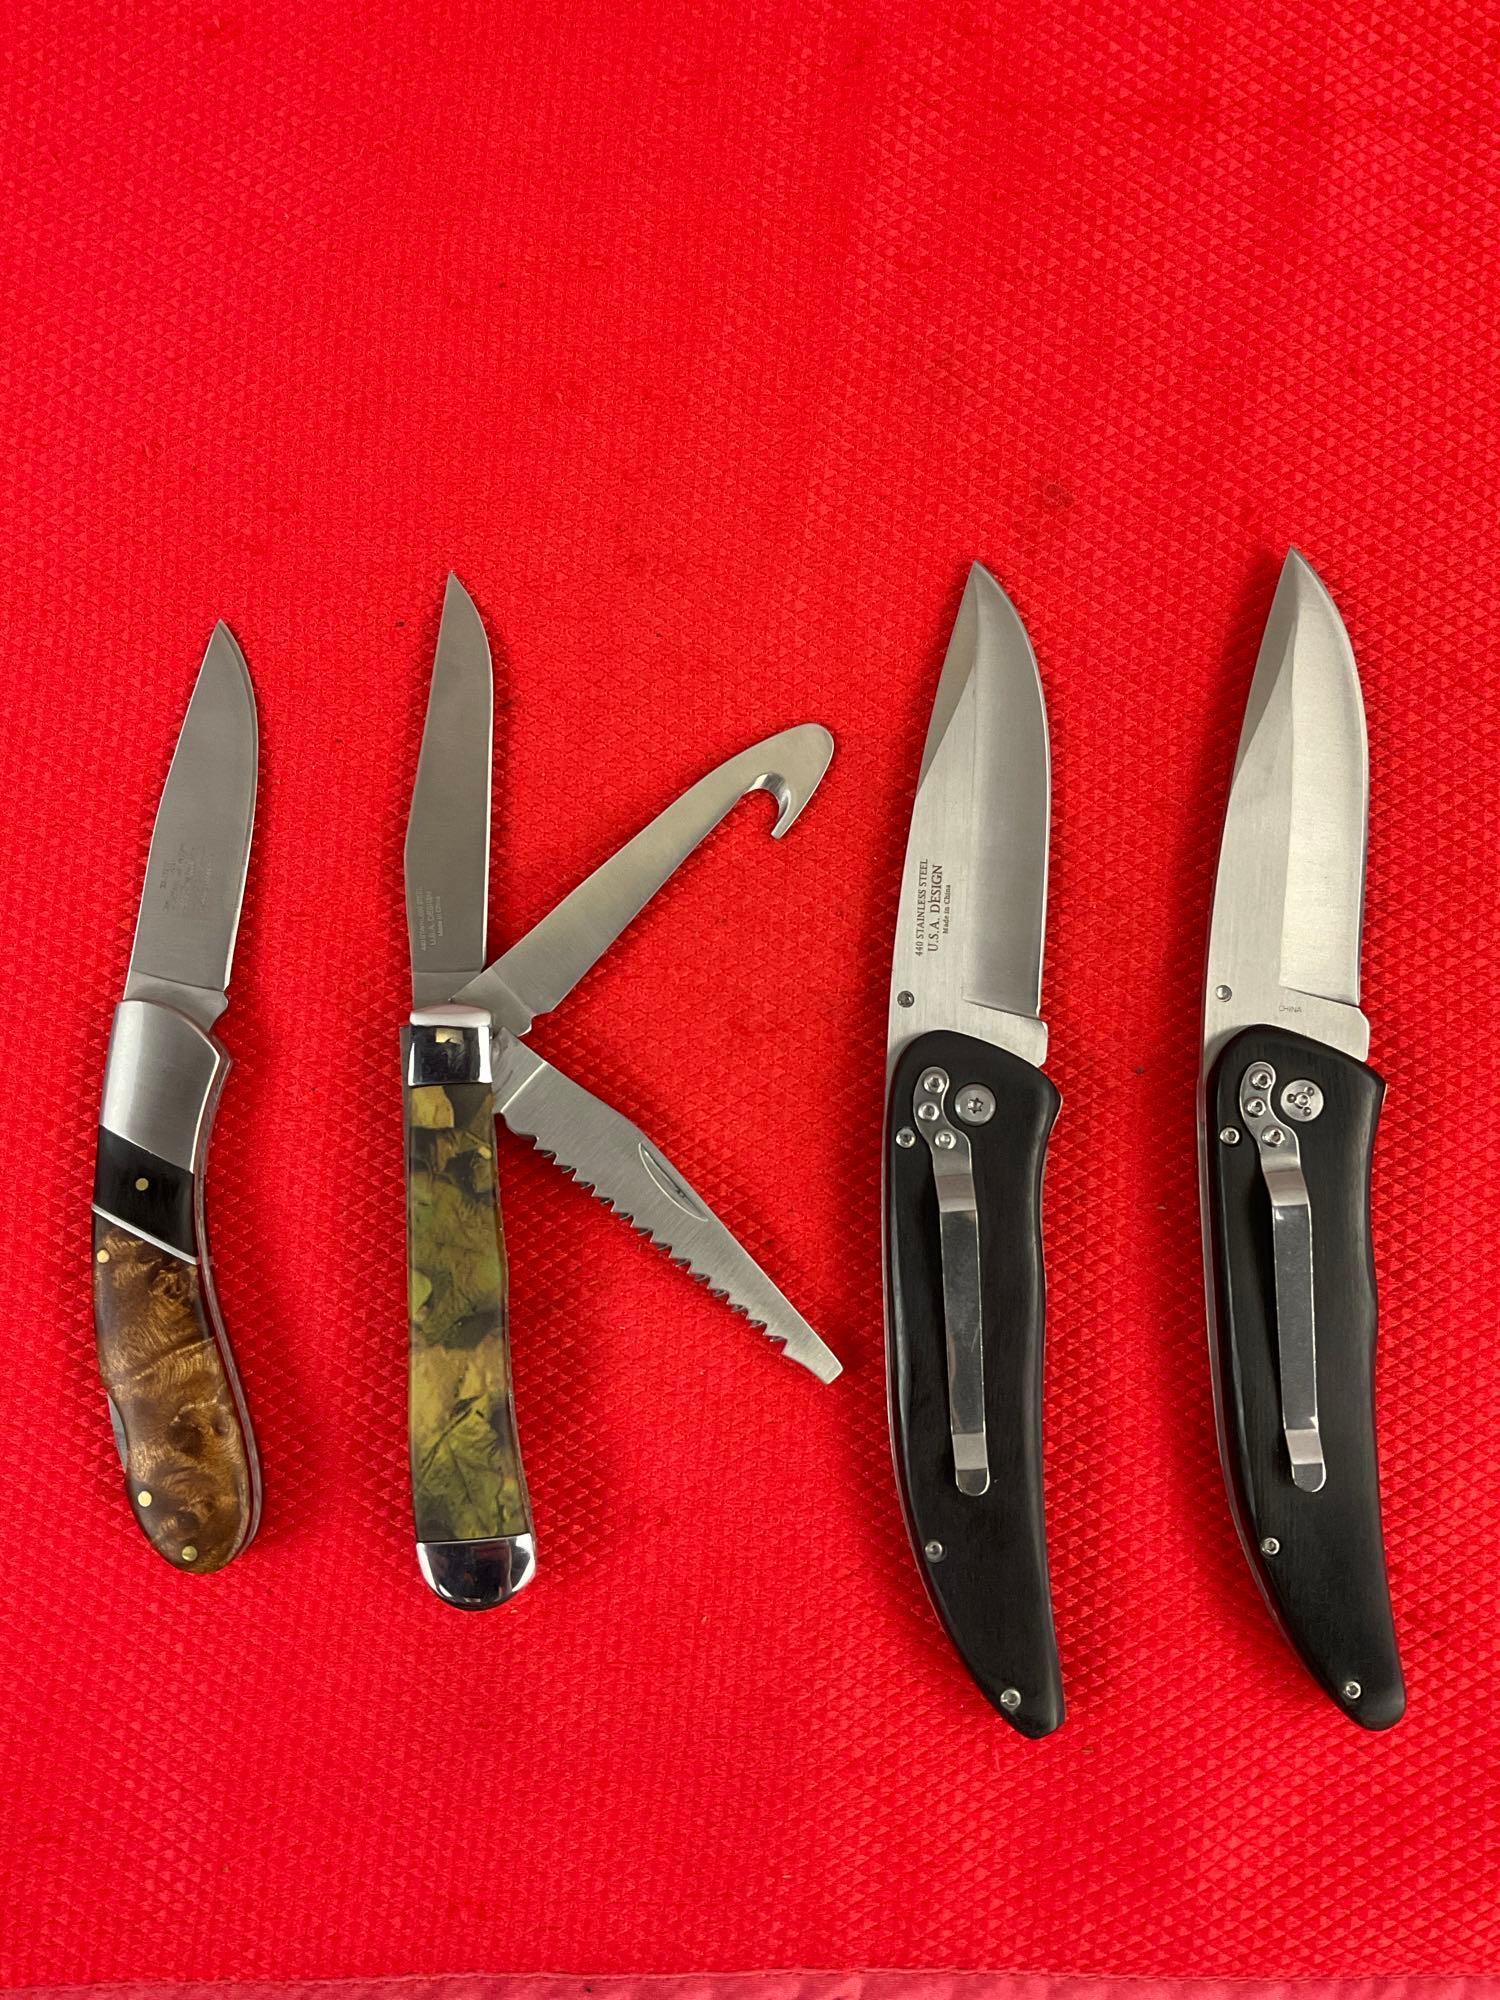 4 pcs Elk Ridge 440 Steel Folding Blade Pocket Knives Models 080D, 080W, 2 Unknown. NIB. See pics.